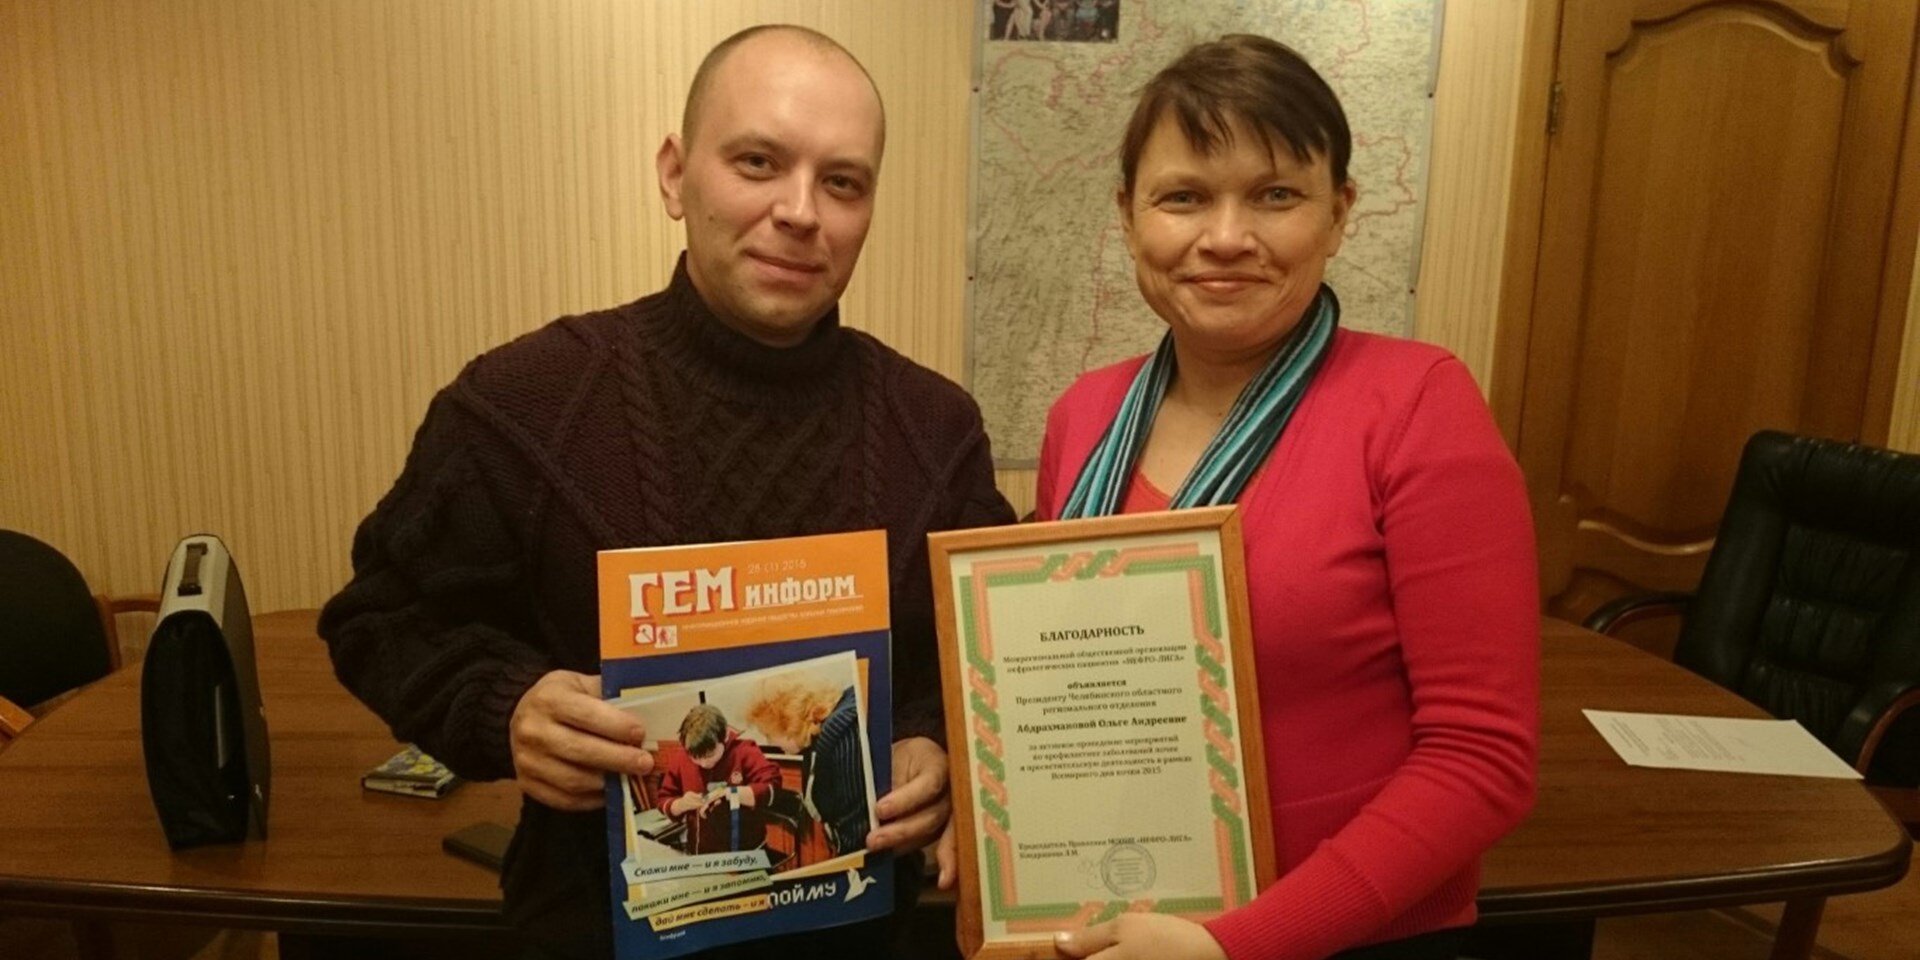 Заседание общественного совета при Росздравнадзоре состоялось в Челябинске 